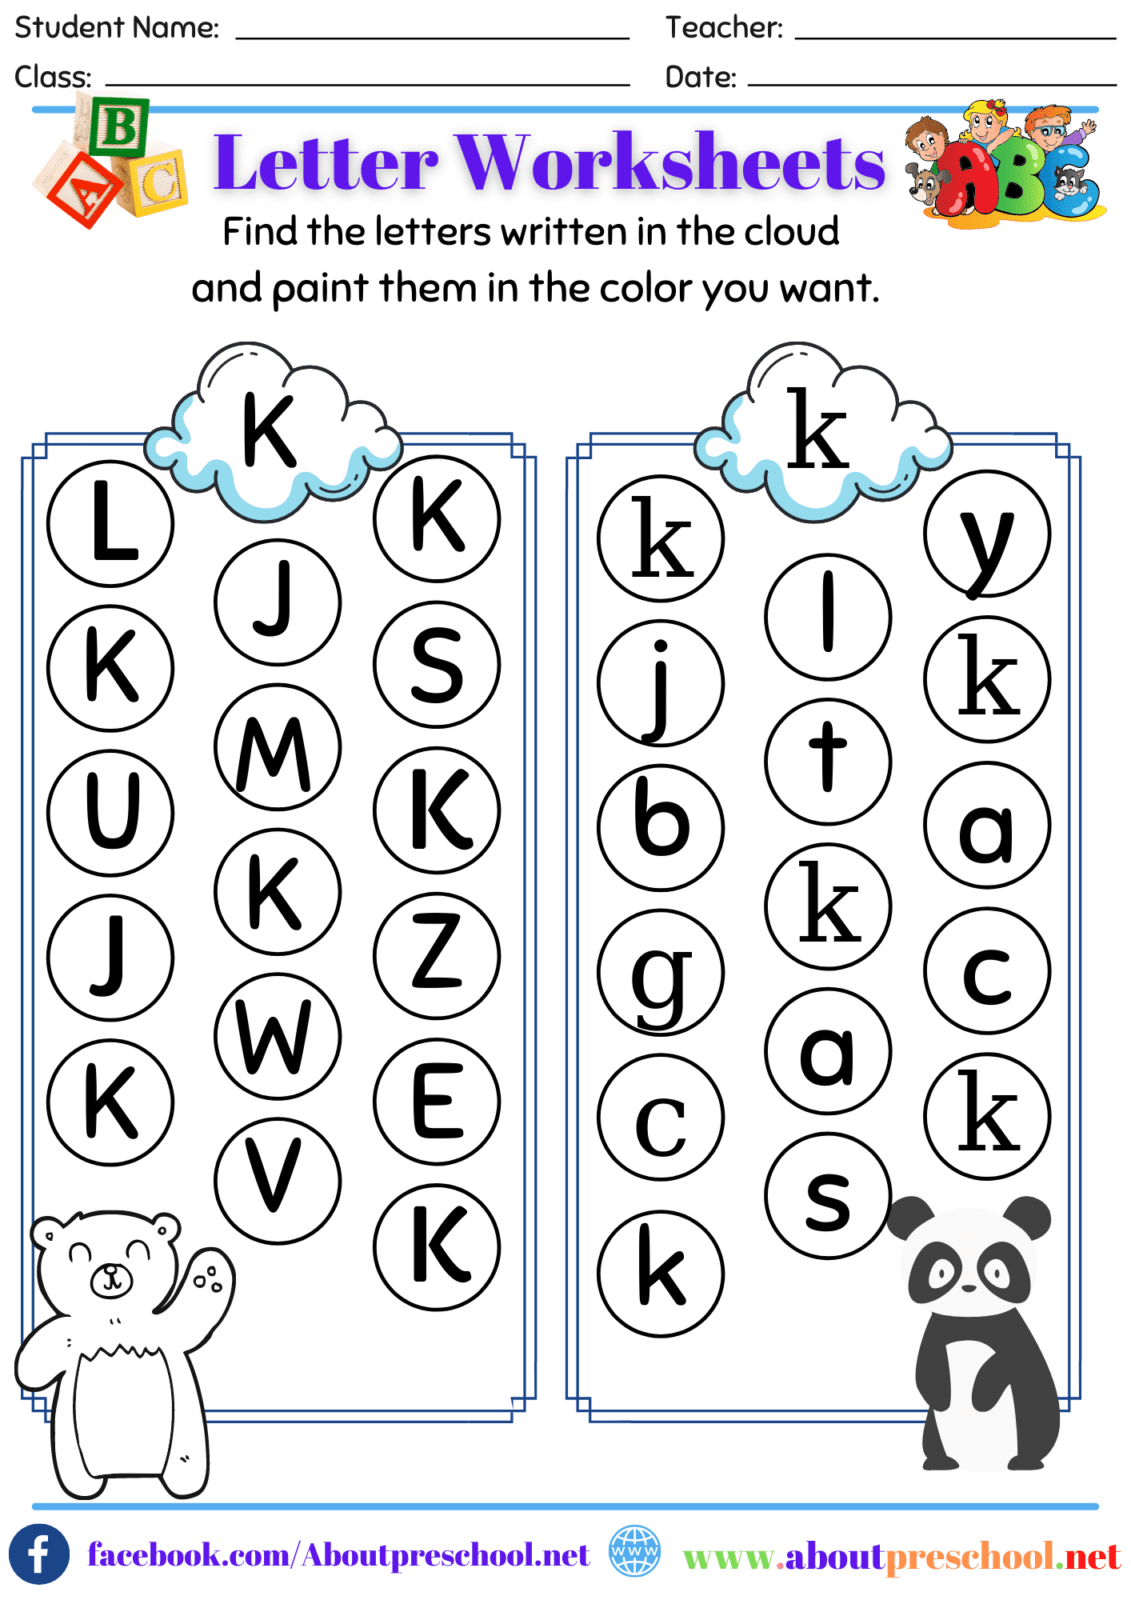 Free Letter K Alphabet Learning Worksheet For Preschool Find The Letter K Worksheet All Kids 